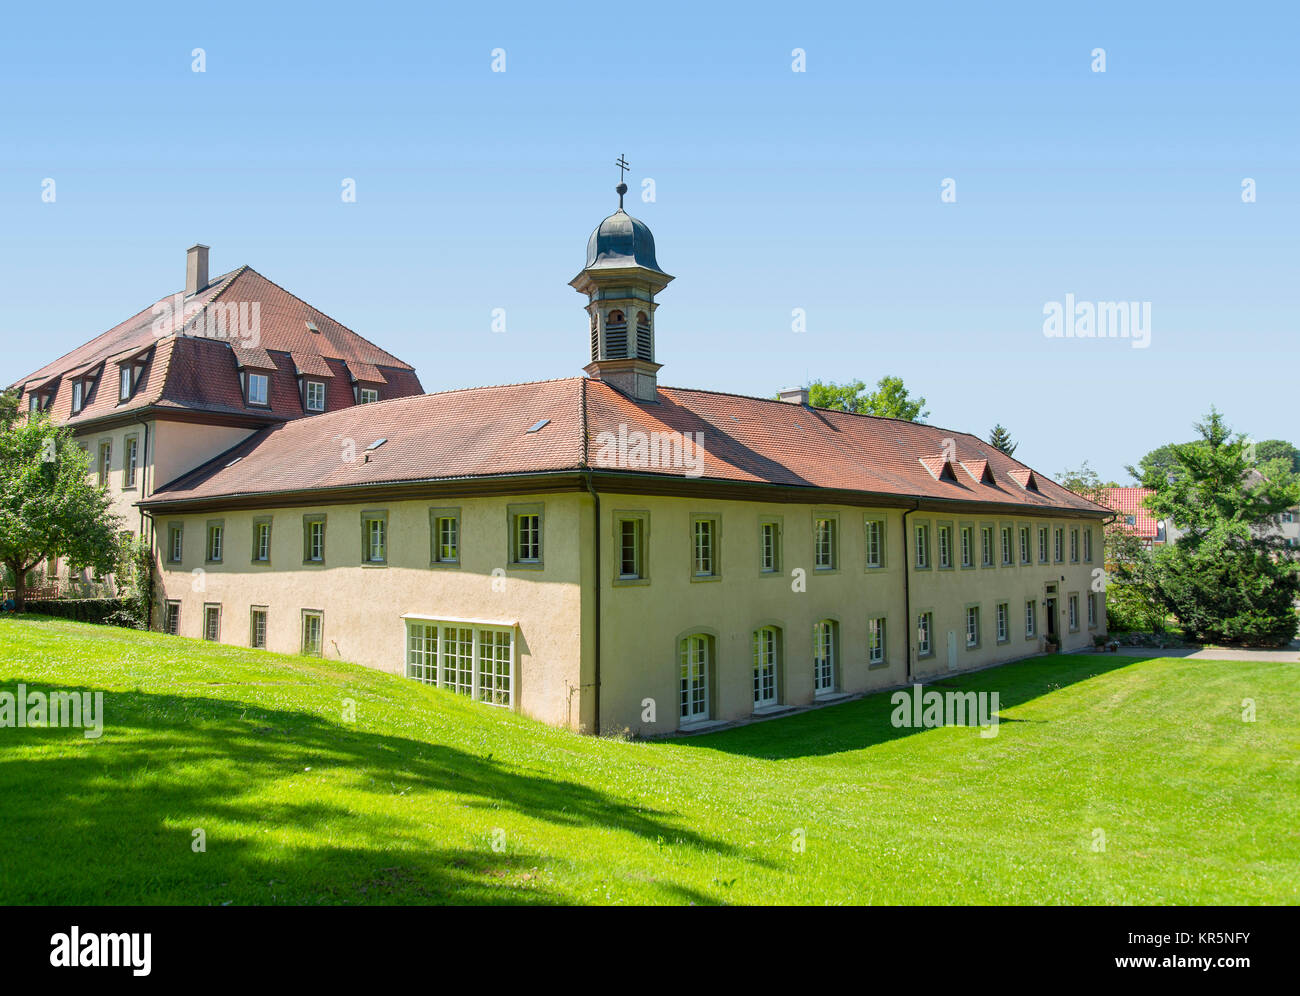 residence castle in kupferzell Stock Photo